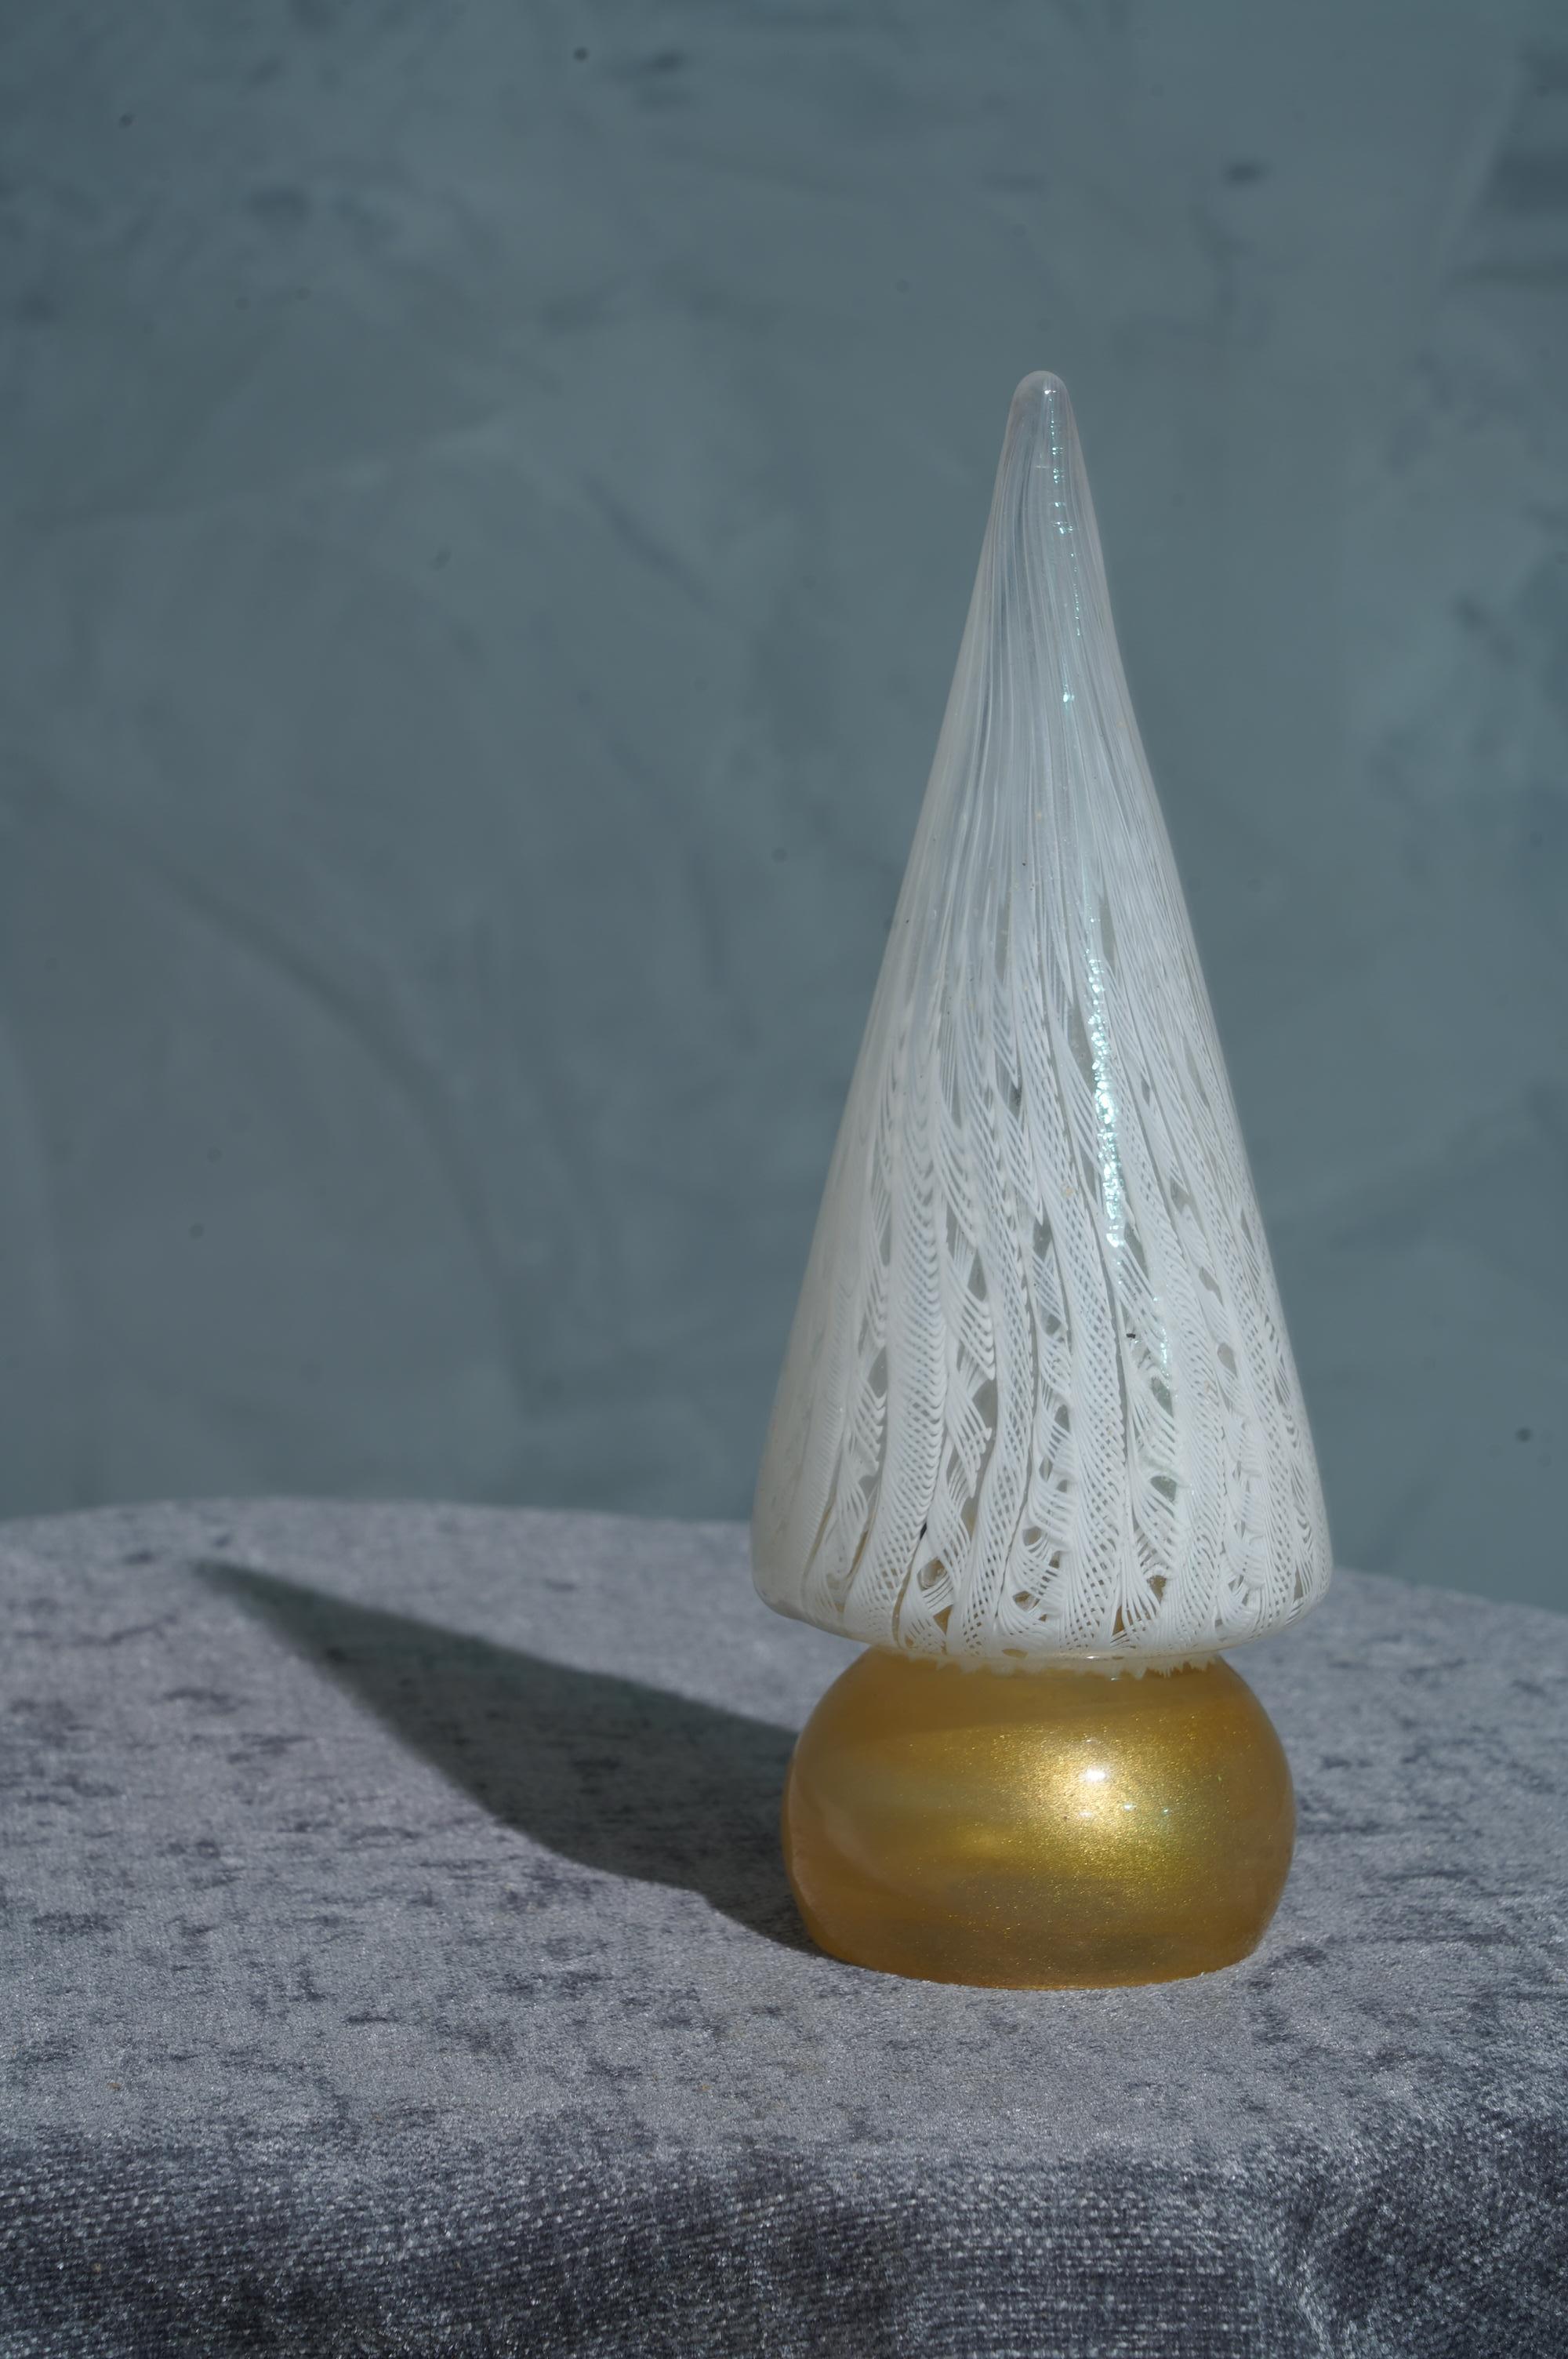 Sculpture très particulière d'Arbre en verre de Murano, stylisée et linéaire comme l'art du verre à Venise commande.

La sculpture représente un arbre de Noël stylisé, avec une base dorée et une partie de la tige blanche. Vous pouvez voir sur les